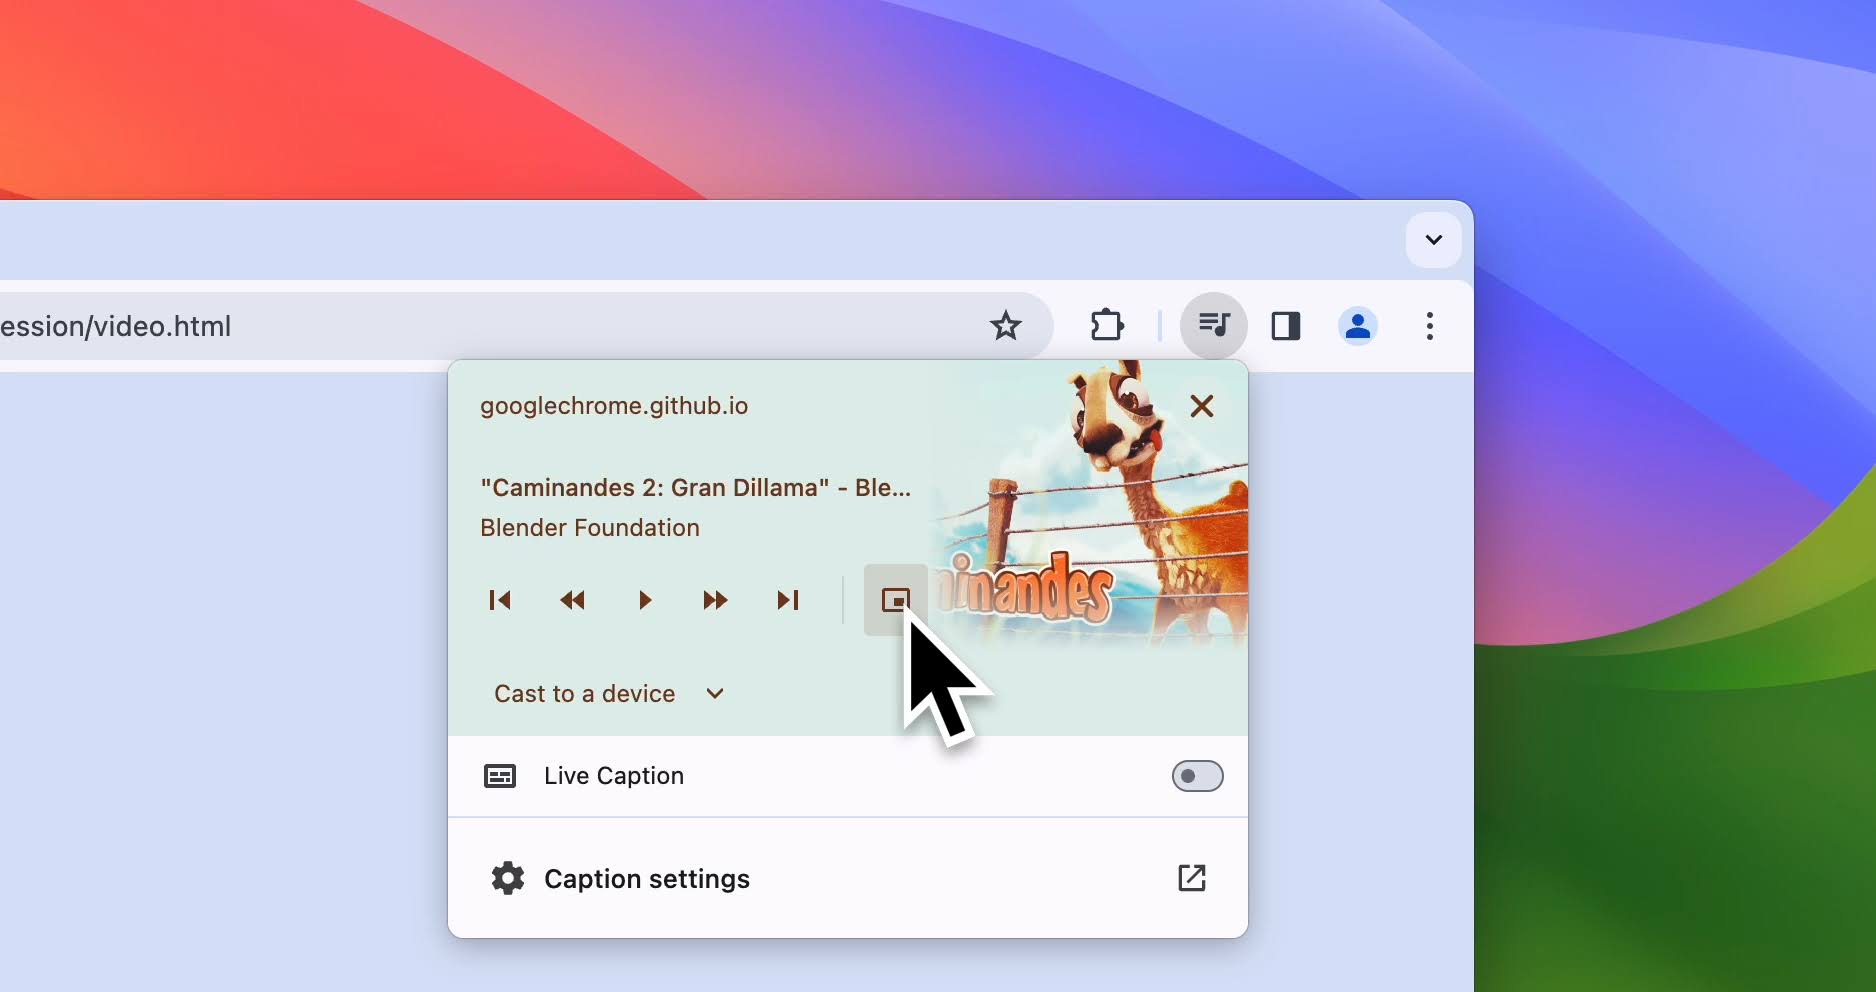 ピクチャー イン ピクチャーのユーザー コントロールにカーソルがある、Chrome ブラウザのメディア コントロールのスクリーンショット。